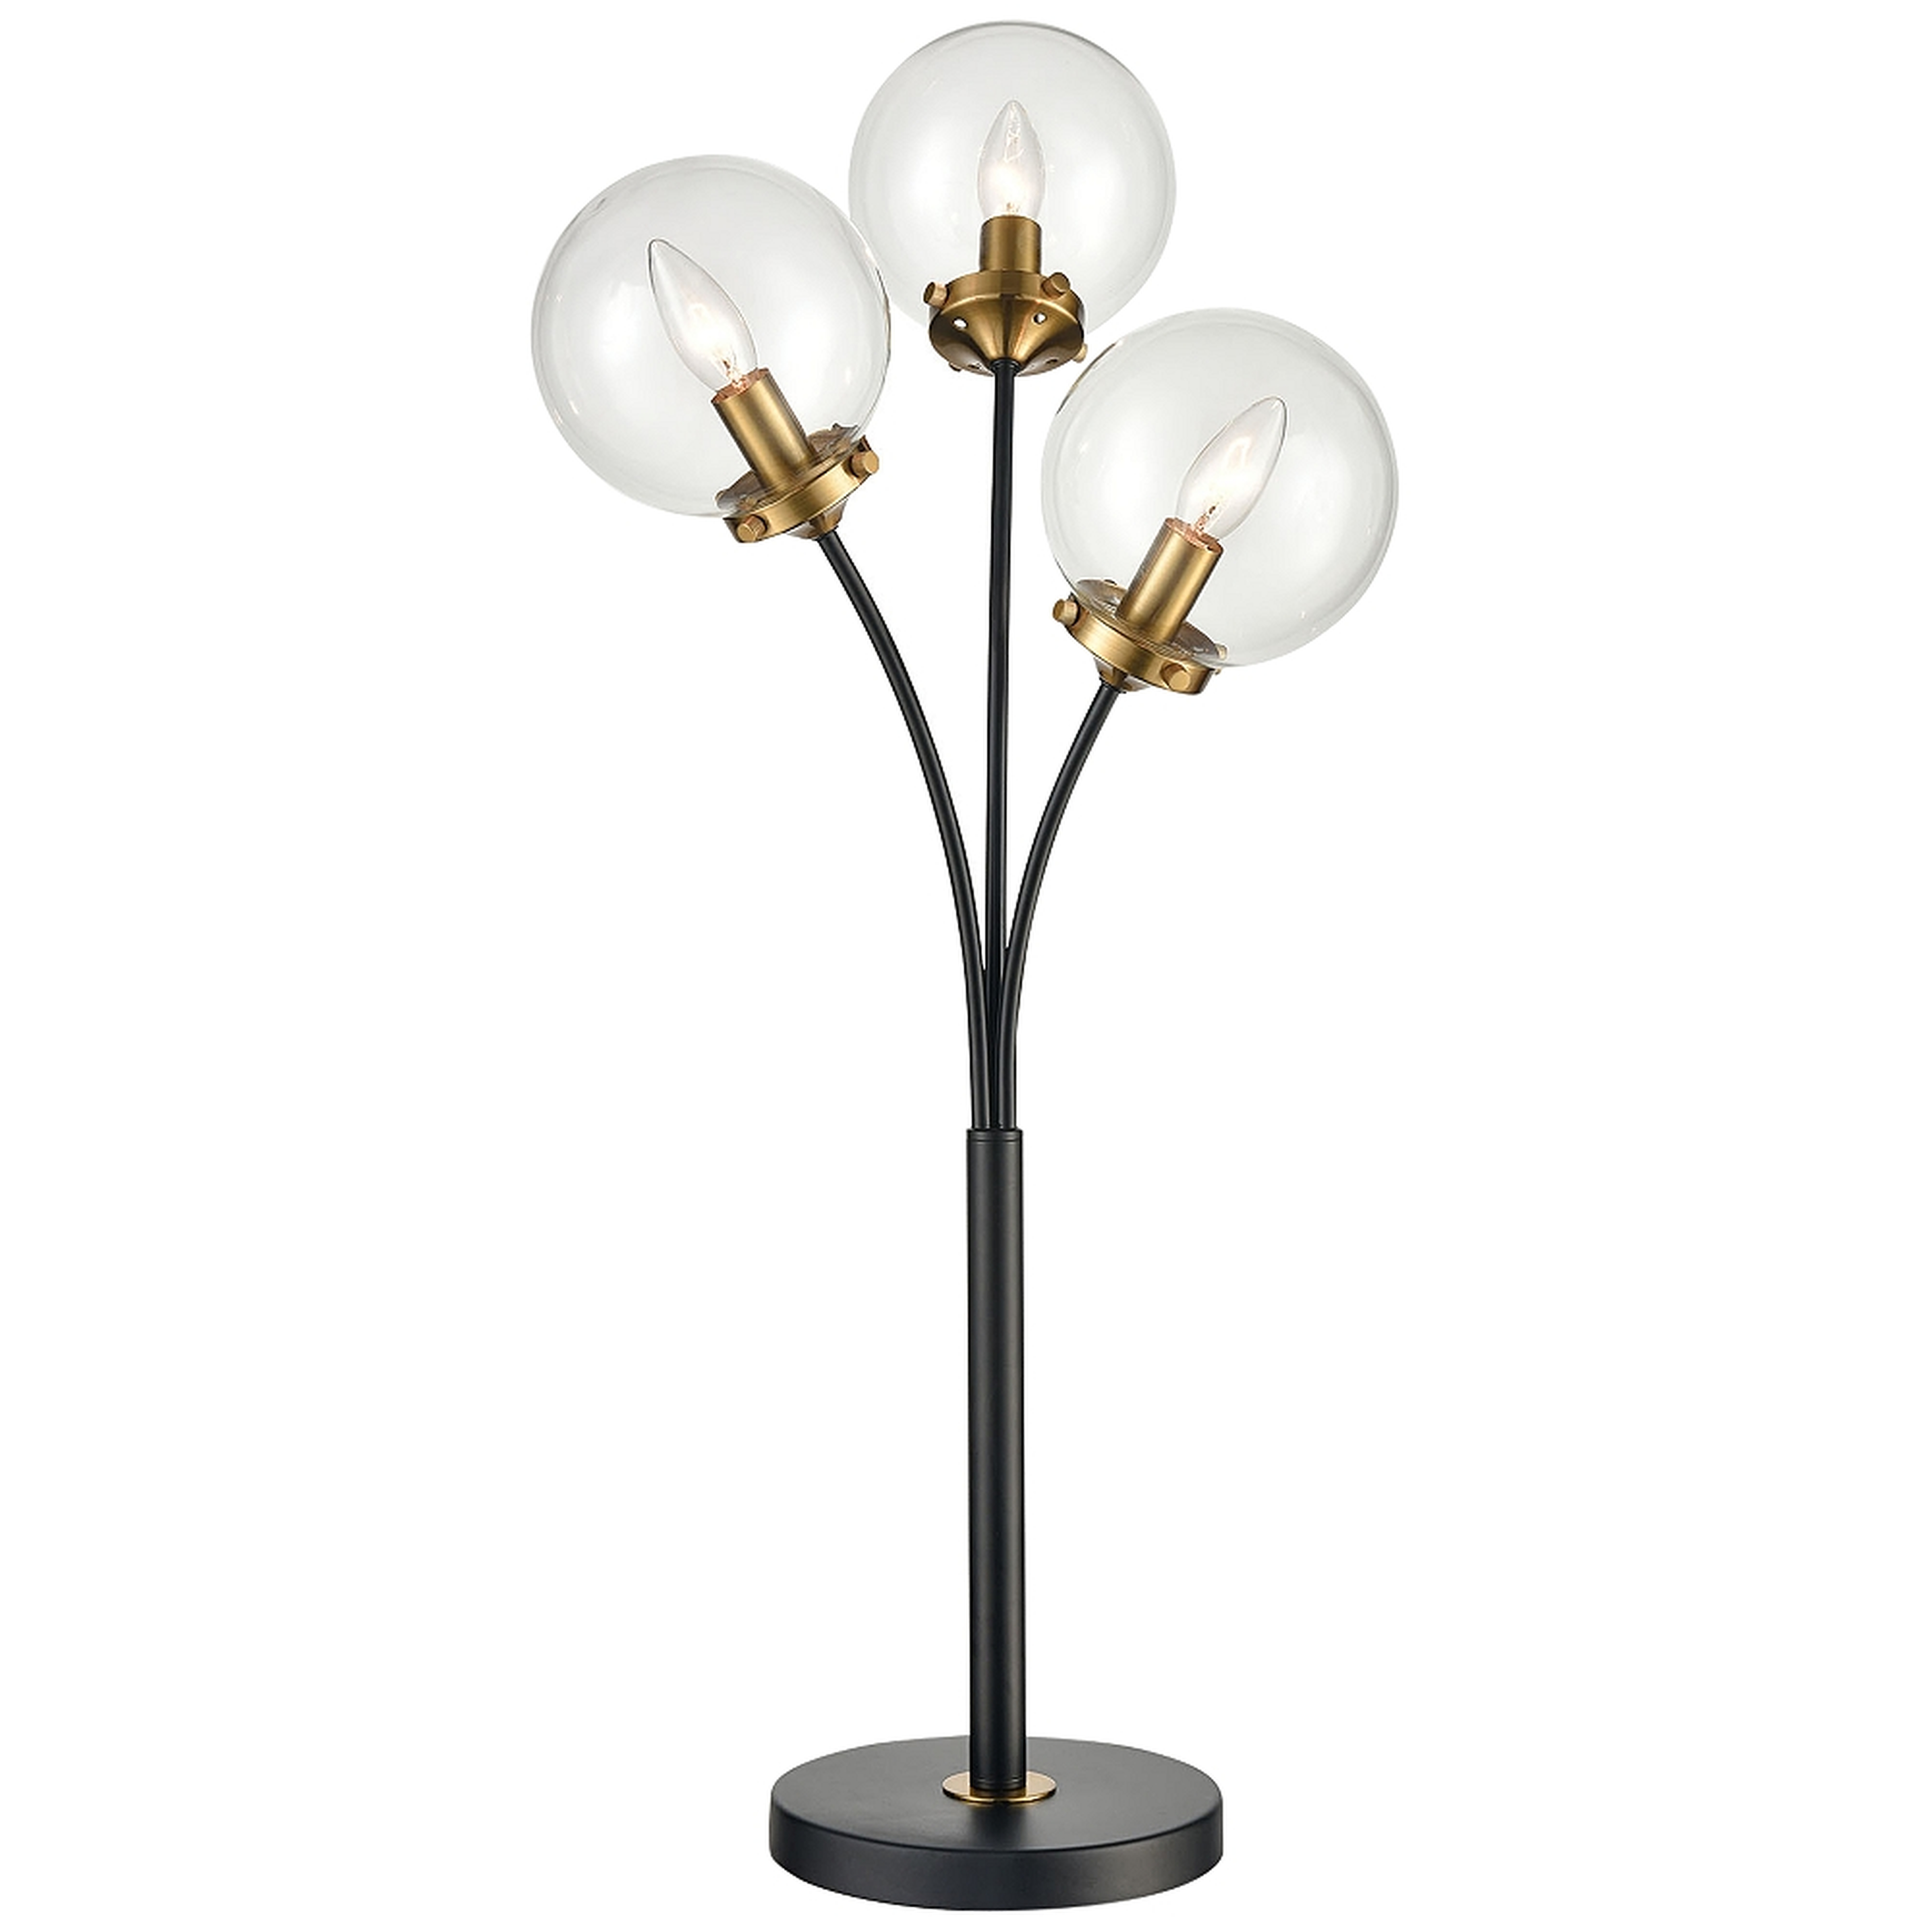 Dimond Boudreaux Matte Black Metal 3-Light LED Table Lamp - Style # 225R0 - Lamps Plus